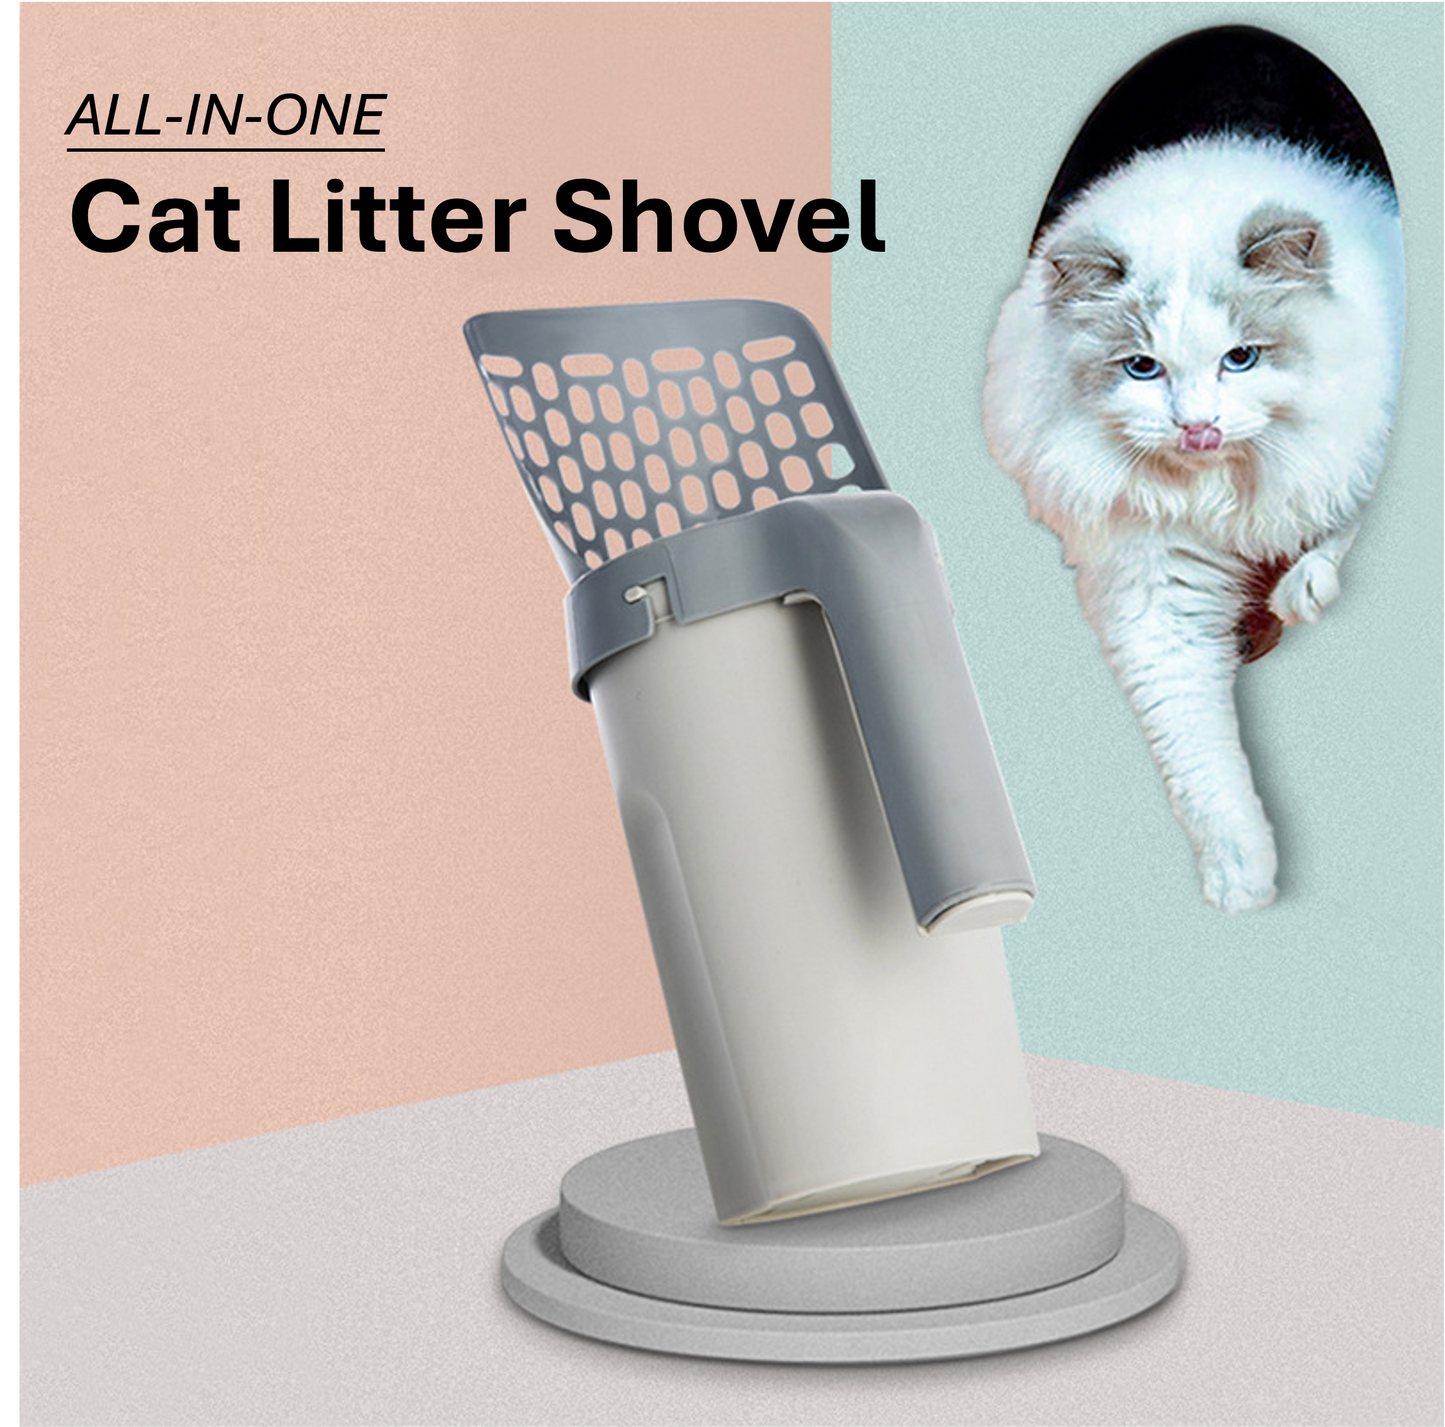 Cat litter shovel "ALL-IN-ONE set"